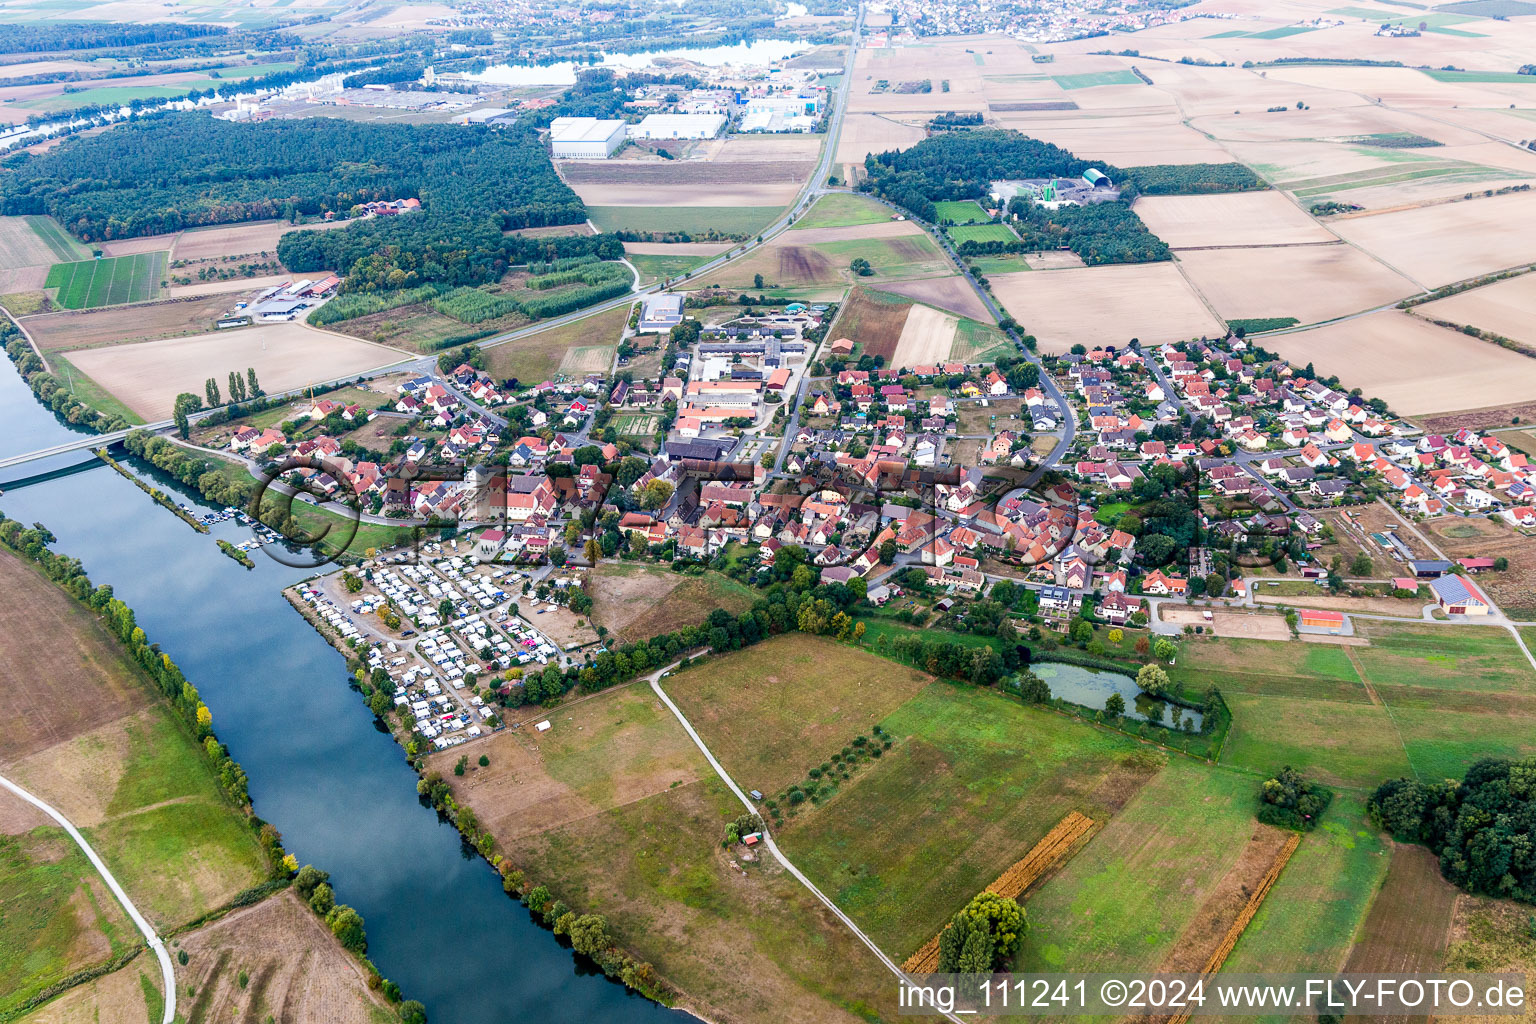 Ortskern am Uferbereich des Flußverlaufes in Schwarzach am Main im Bundesland Bayern, Deutschland